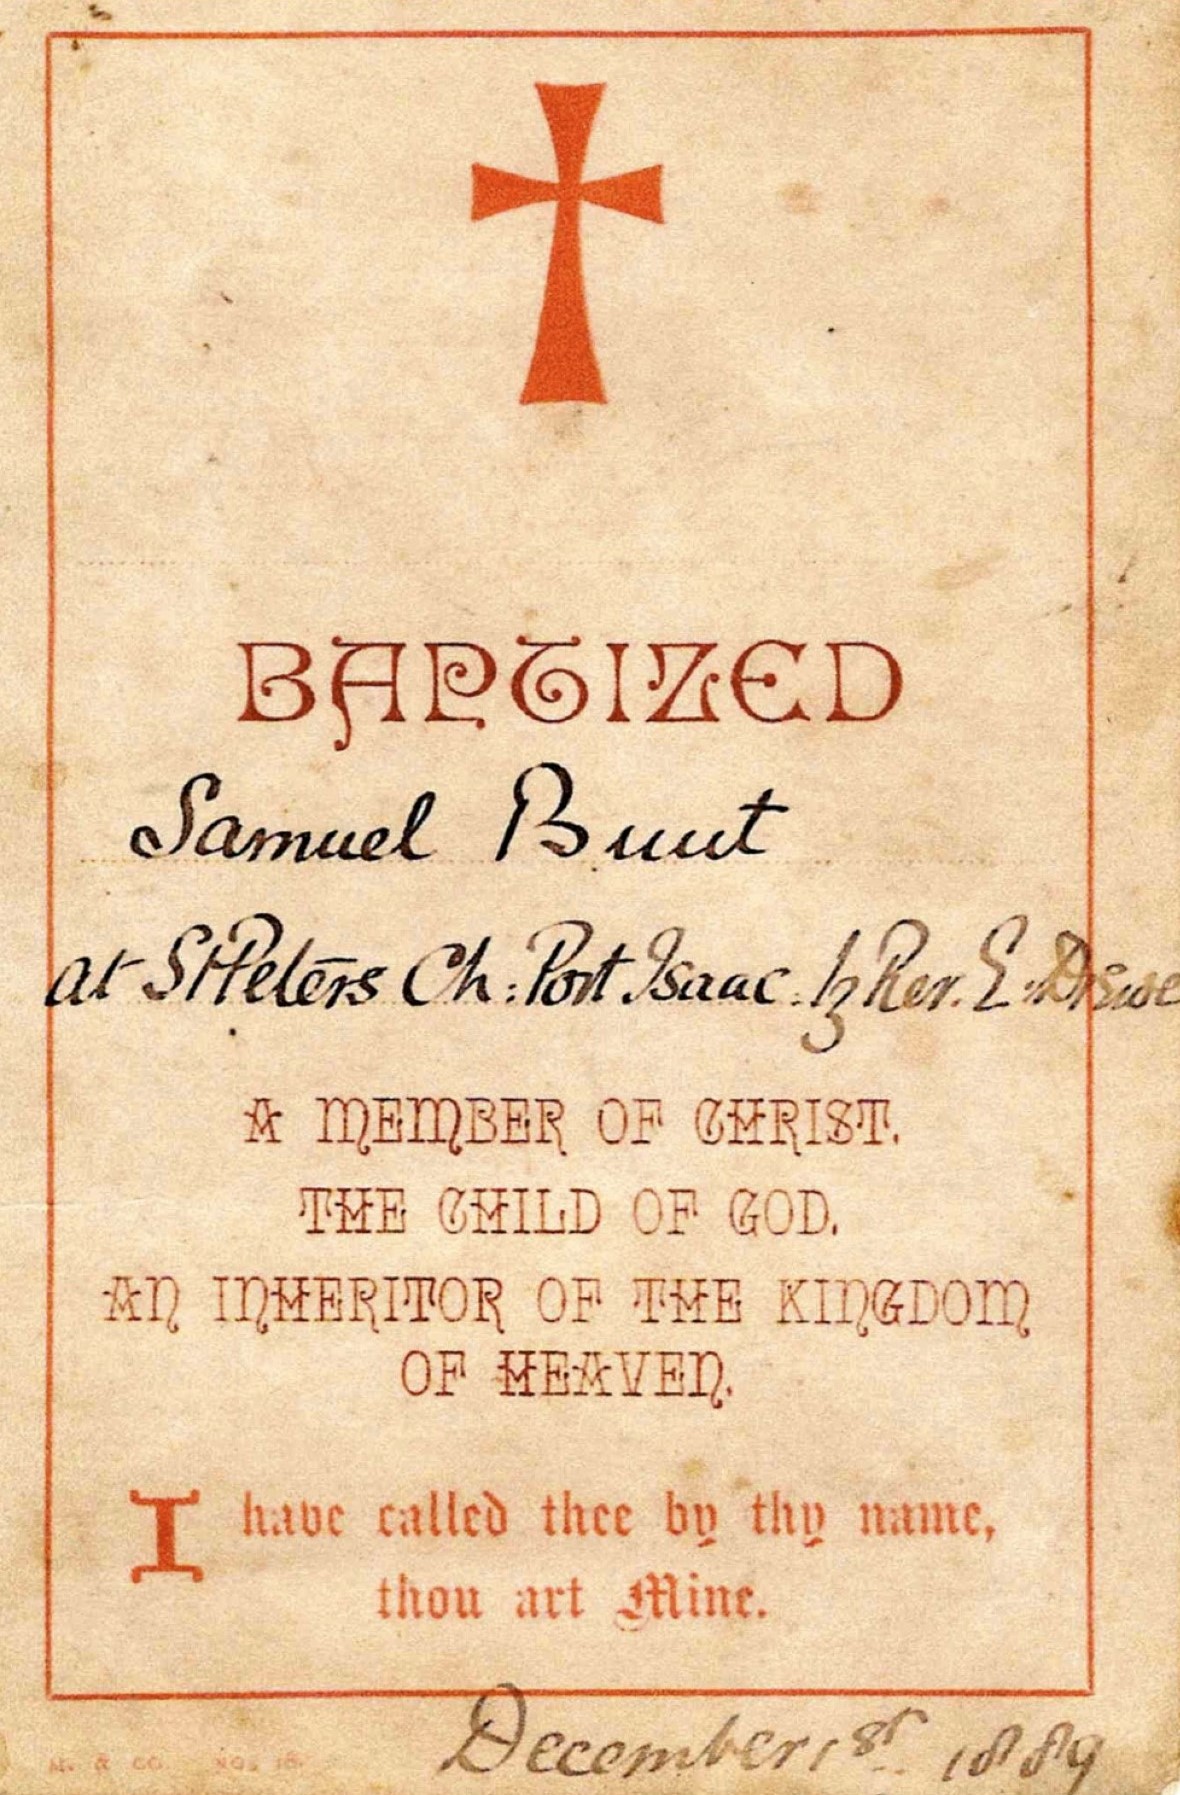 Certificate of Baptism of Samuel Bunt